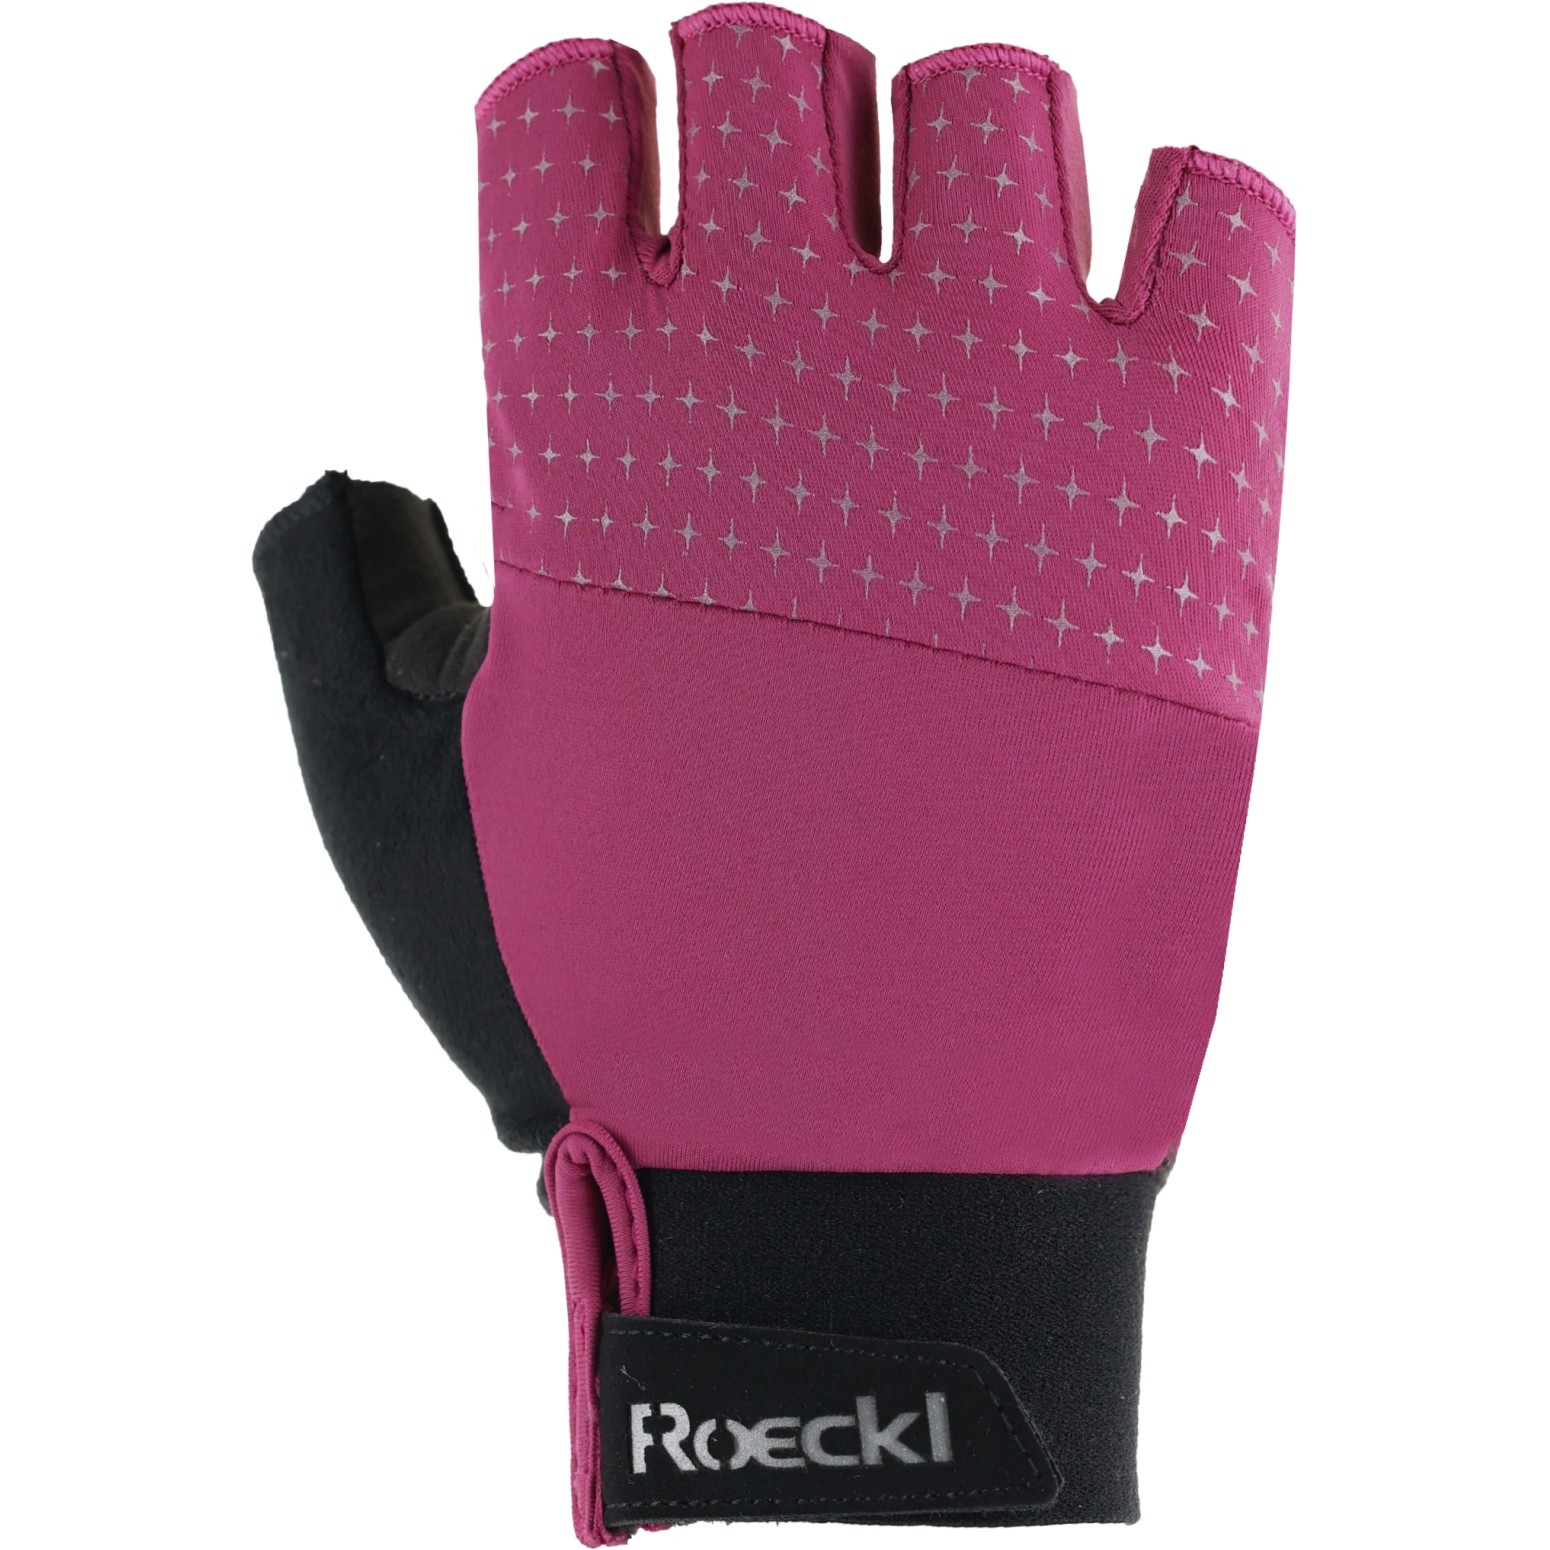 Produktbild von Roeckl Sports Diamante Fahrradhandschuhe Damen - posh pink 4350